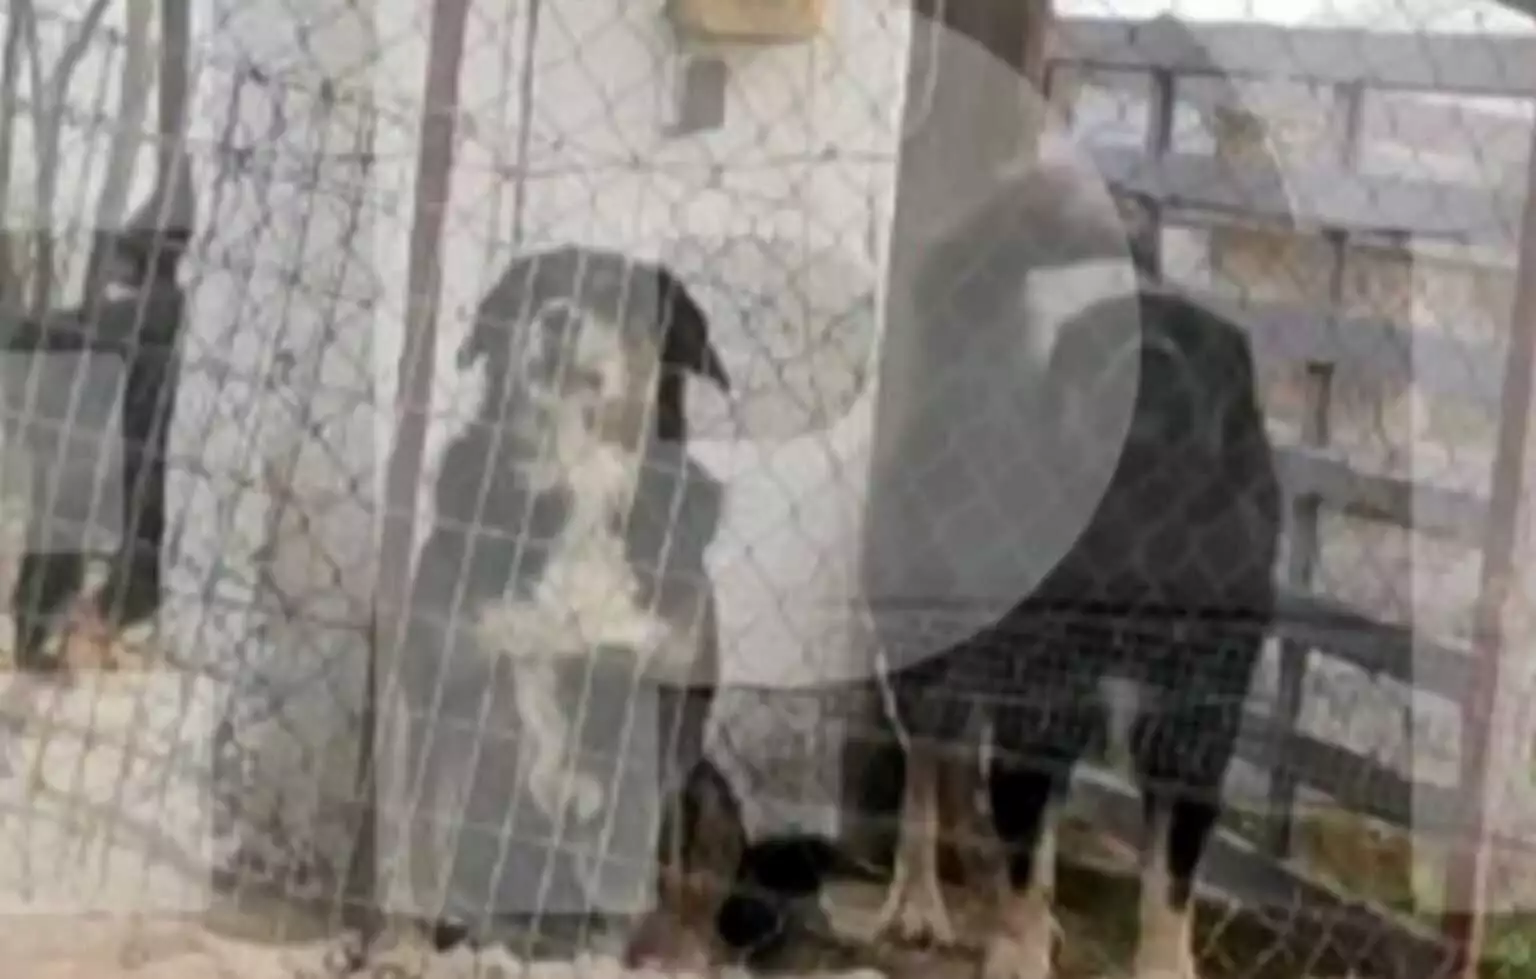 Θεσσαλονίκη: «Ο θόρυβος από το αλυσοπρίονο προκάλεσε την επίθεση των σκυλιών», είπε στην απολογία του ο ιδιοκτήτης